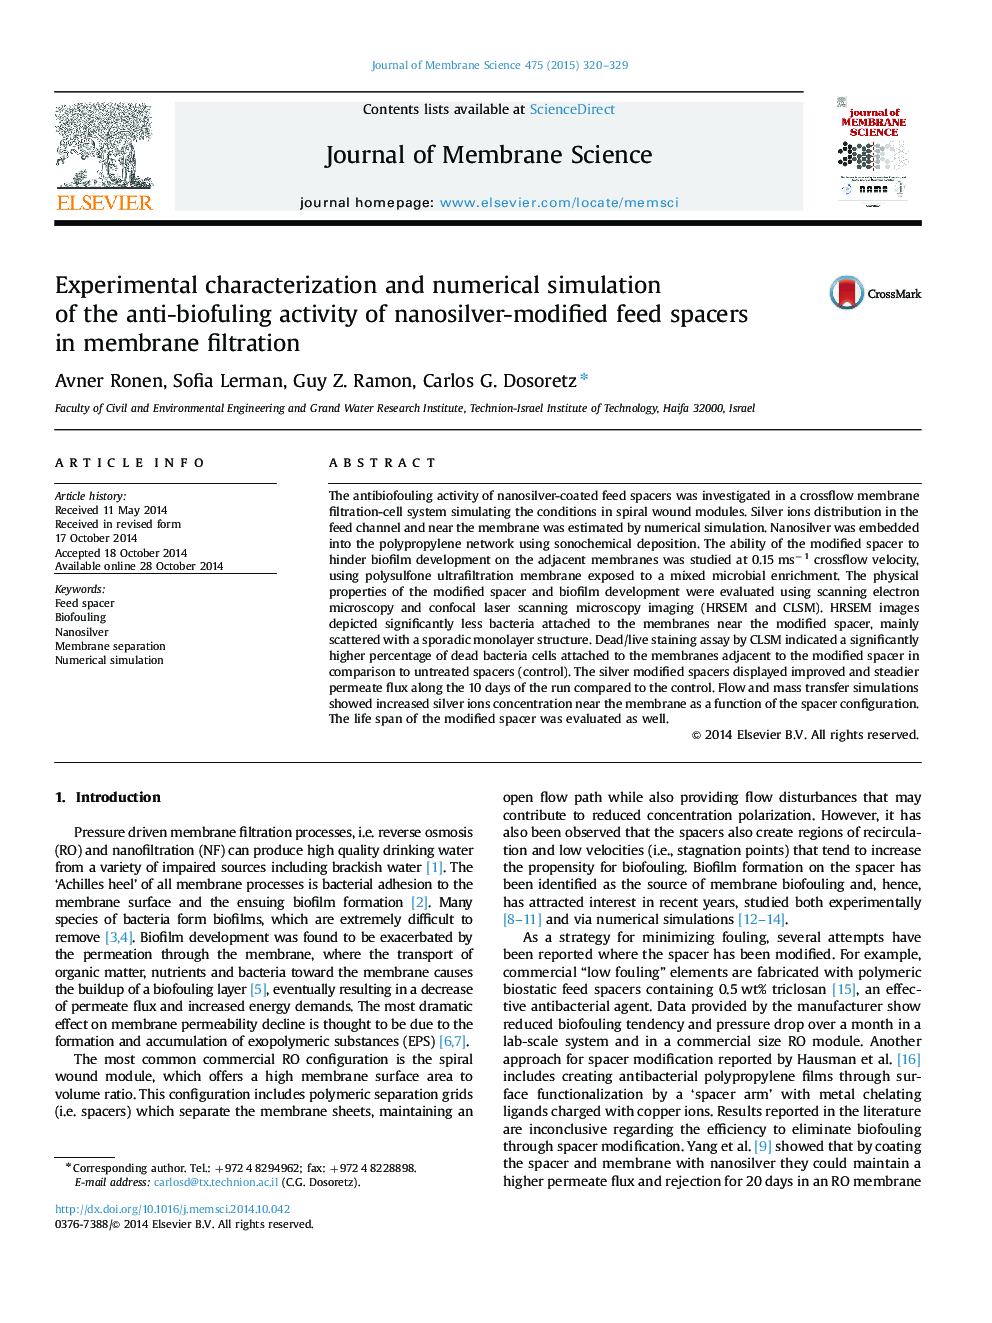 خصوصیات تجربی و شبیه سازی عددی فعال ضد بیوفیزیک فیدر تغذیه اصلاح شده با نانوذرات در فیلتراسیون غشاء 